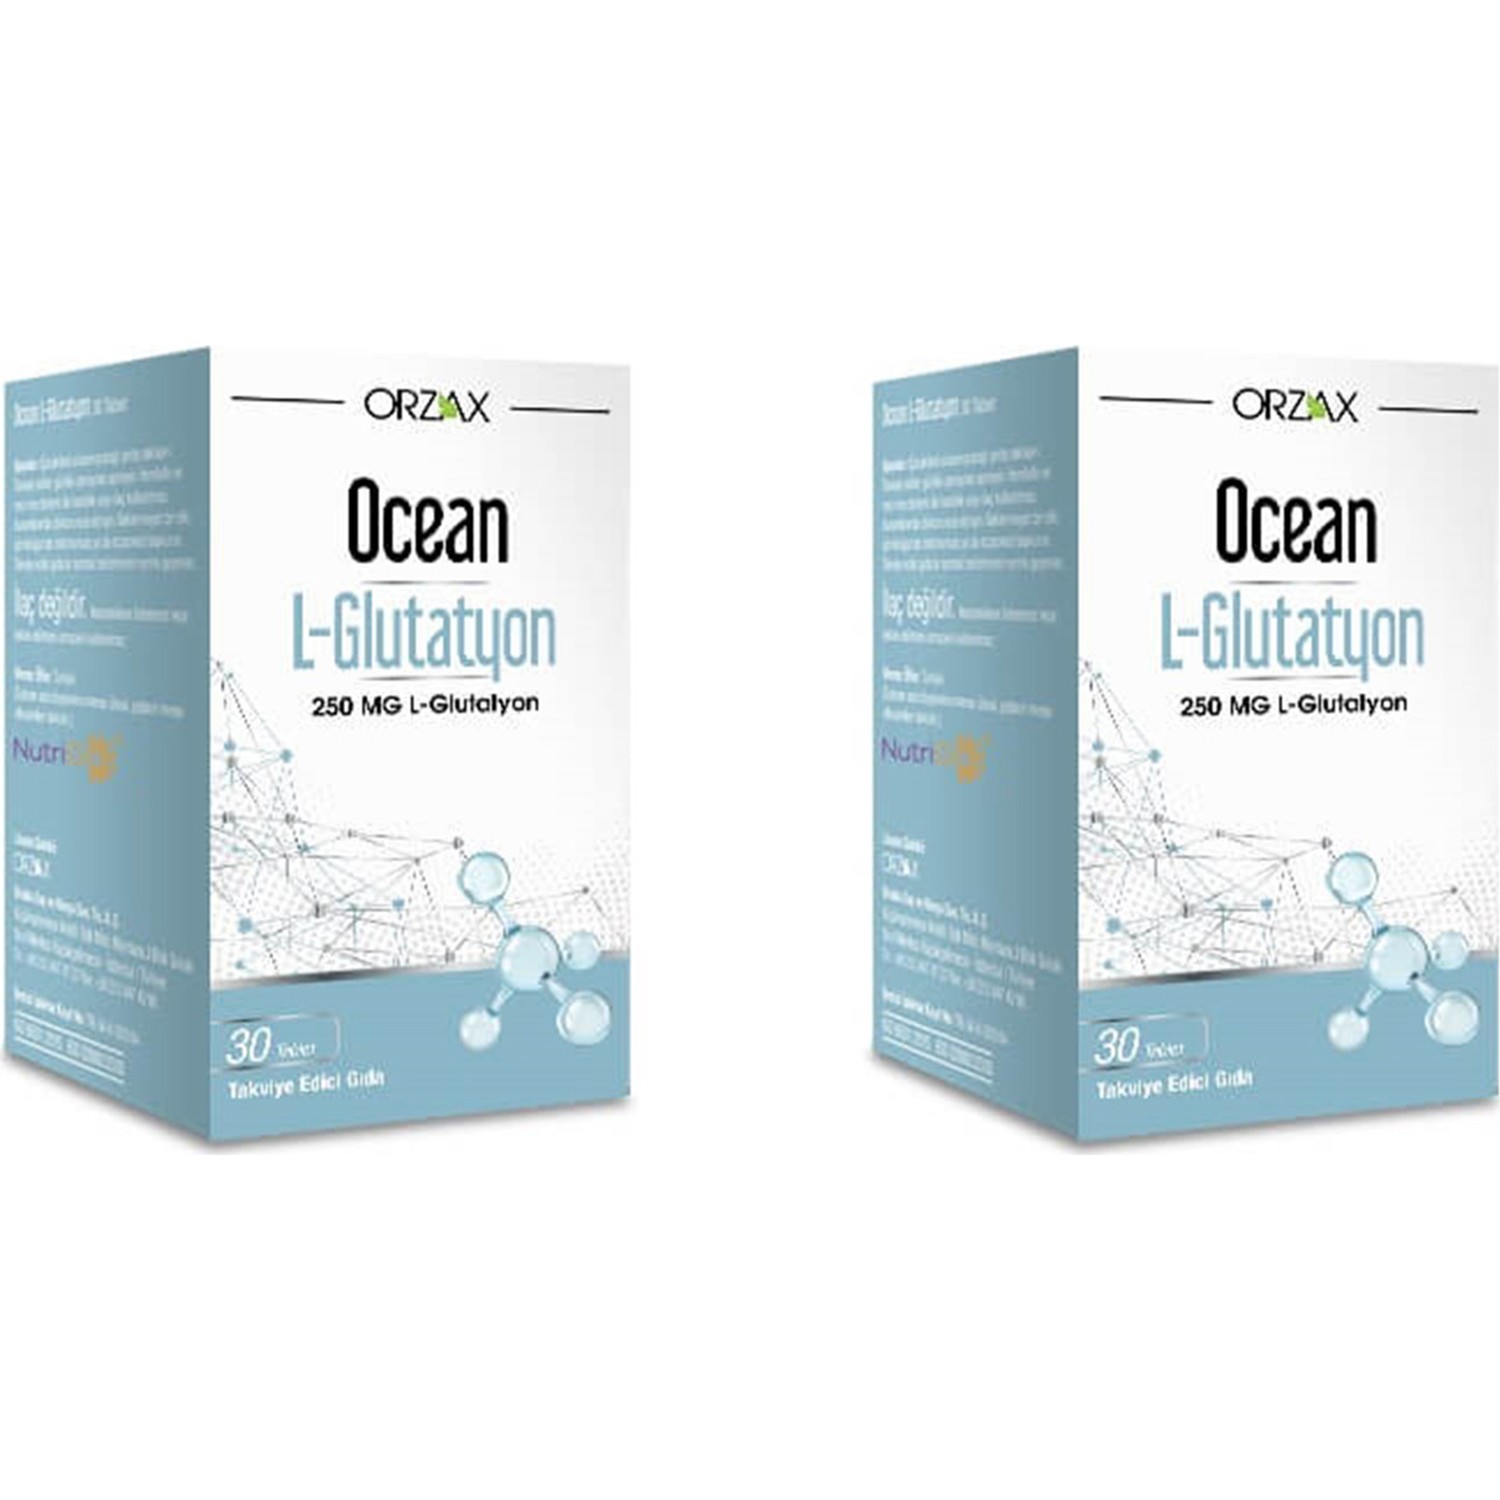 L-глутатион Orzax Ocean 250 мг, 2 упаковки по 30 таблеток пикоцинк ocean 30 таблеток цитрат магния voonka 200 мг 62 таблеток